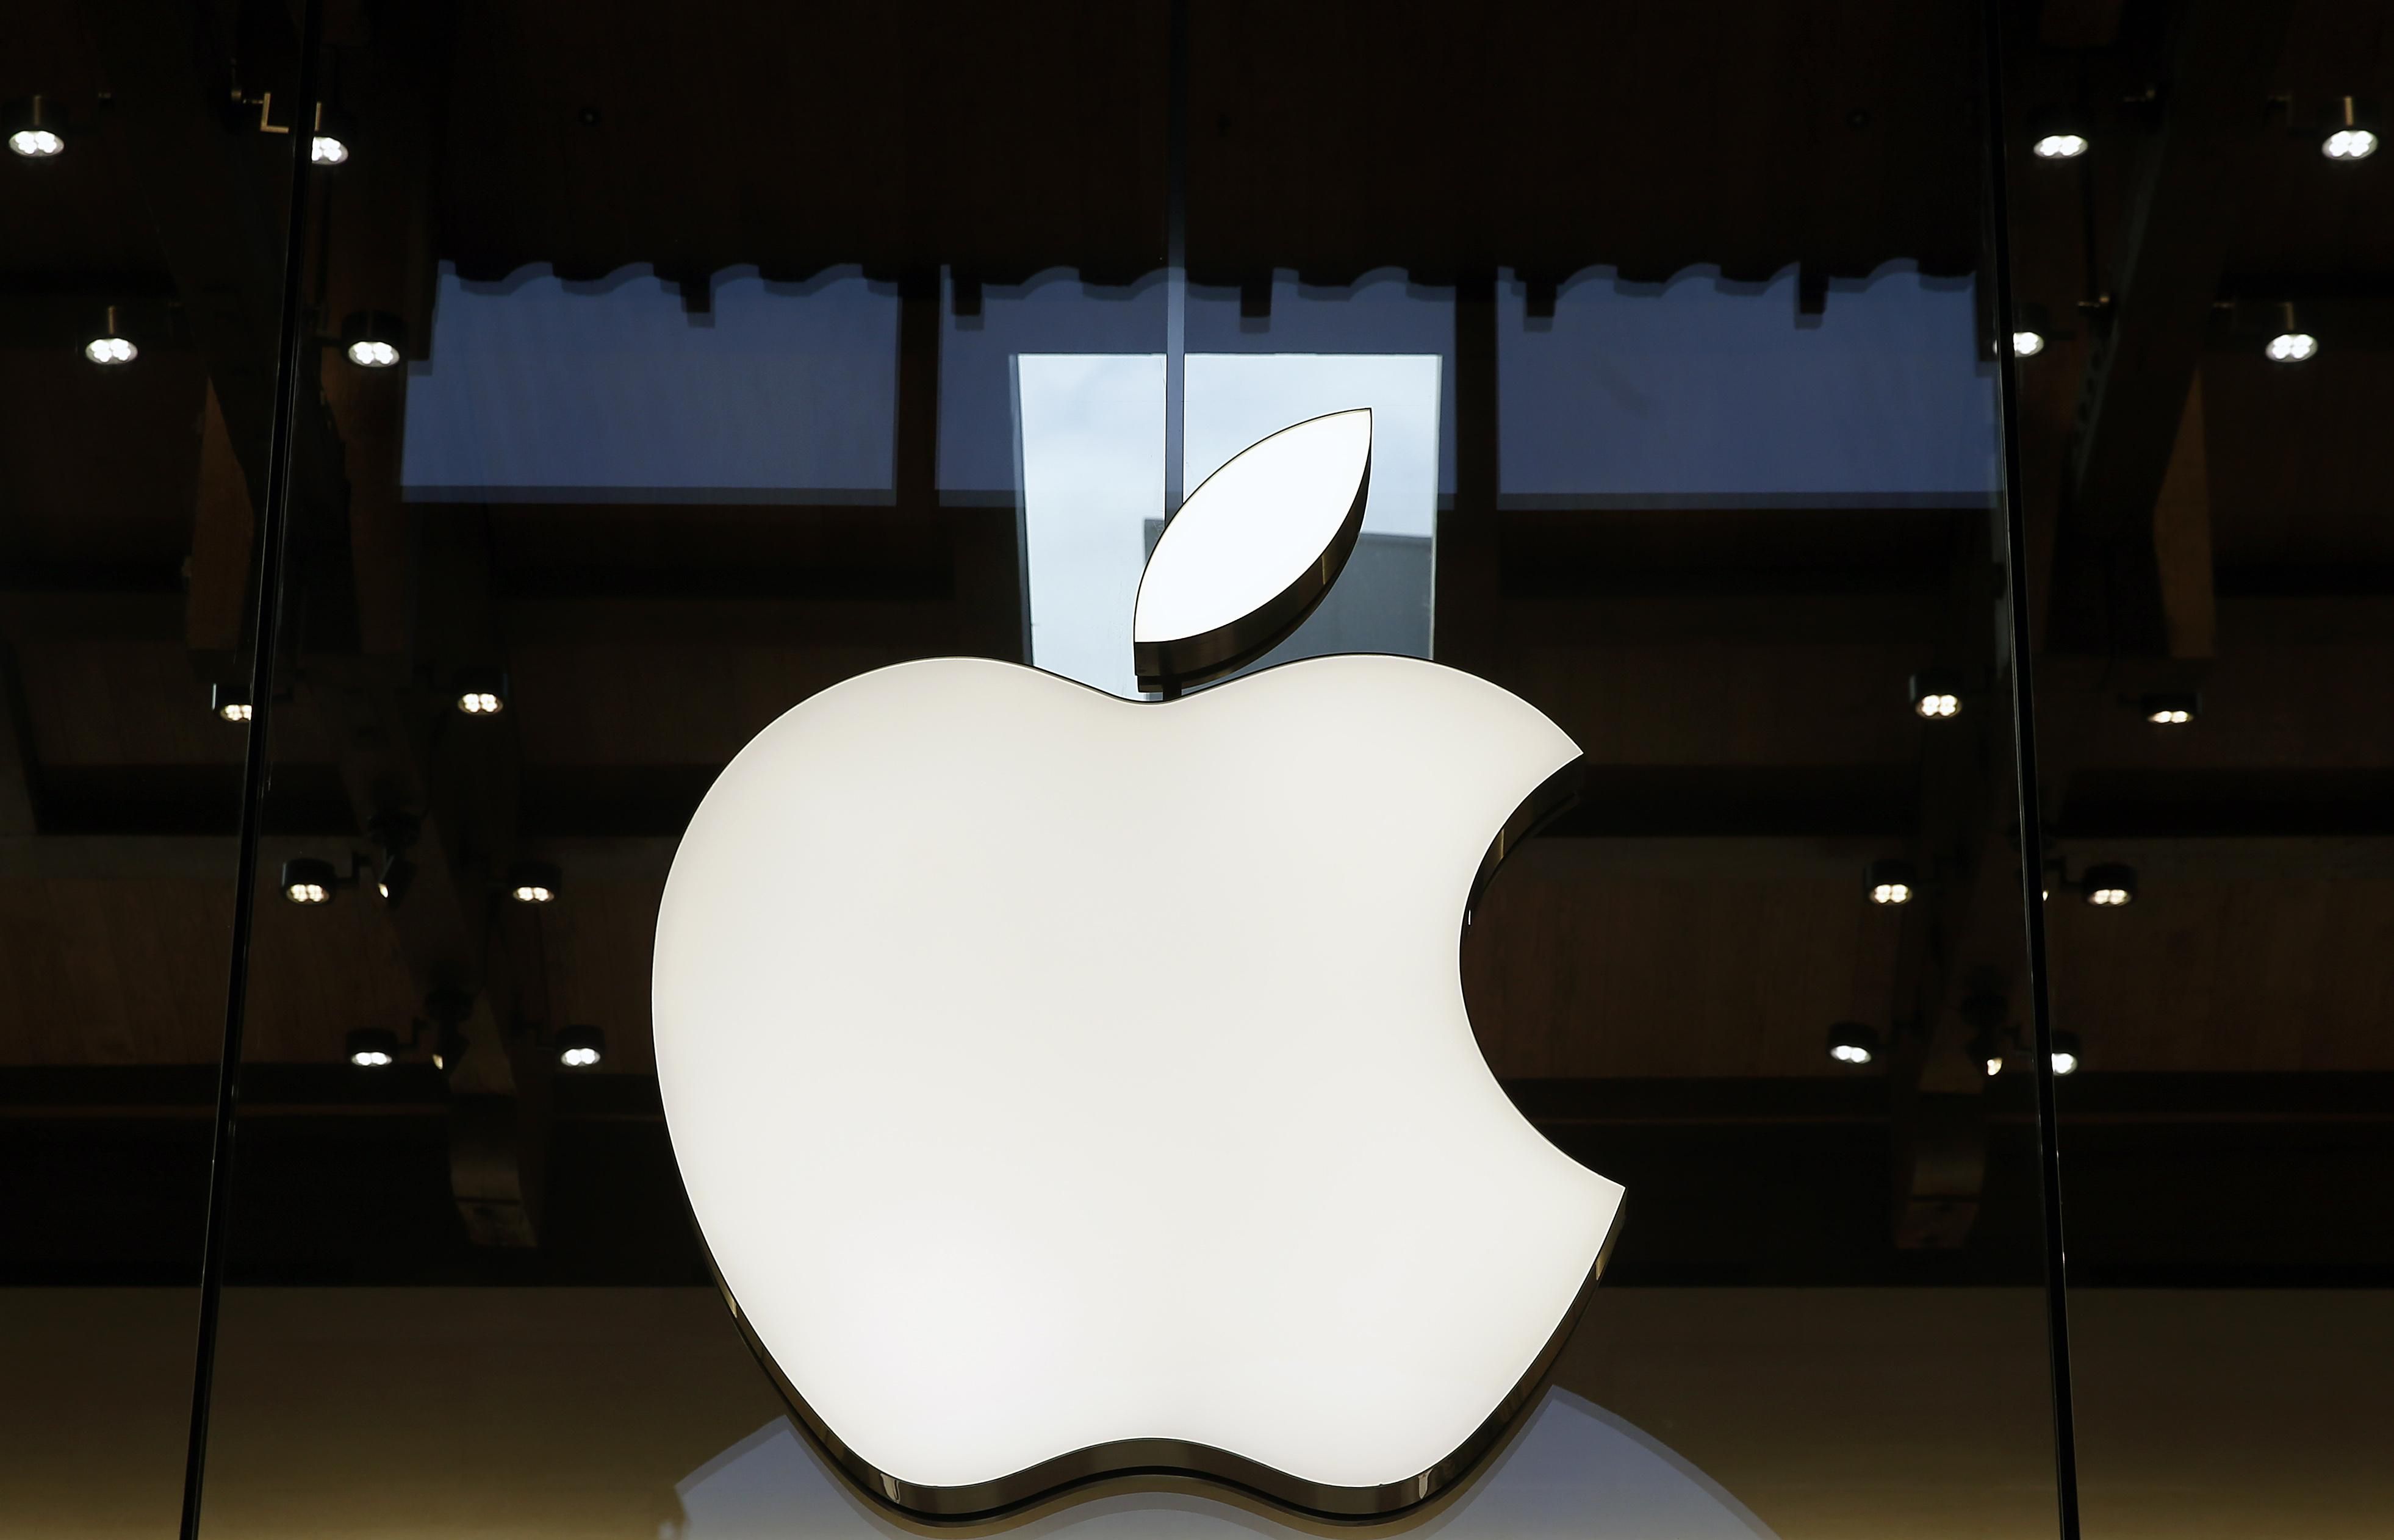 Снова друзья: Qualcomm и Apple положили конец патентным разбирательствам